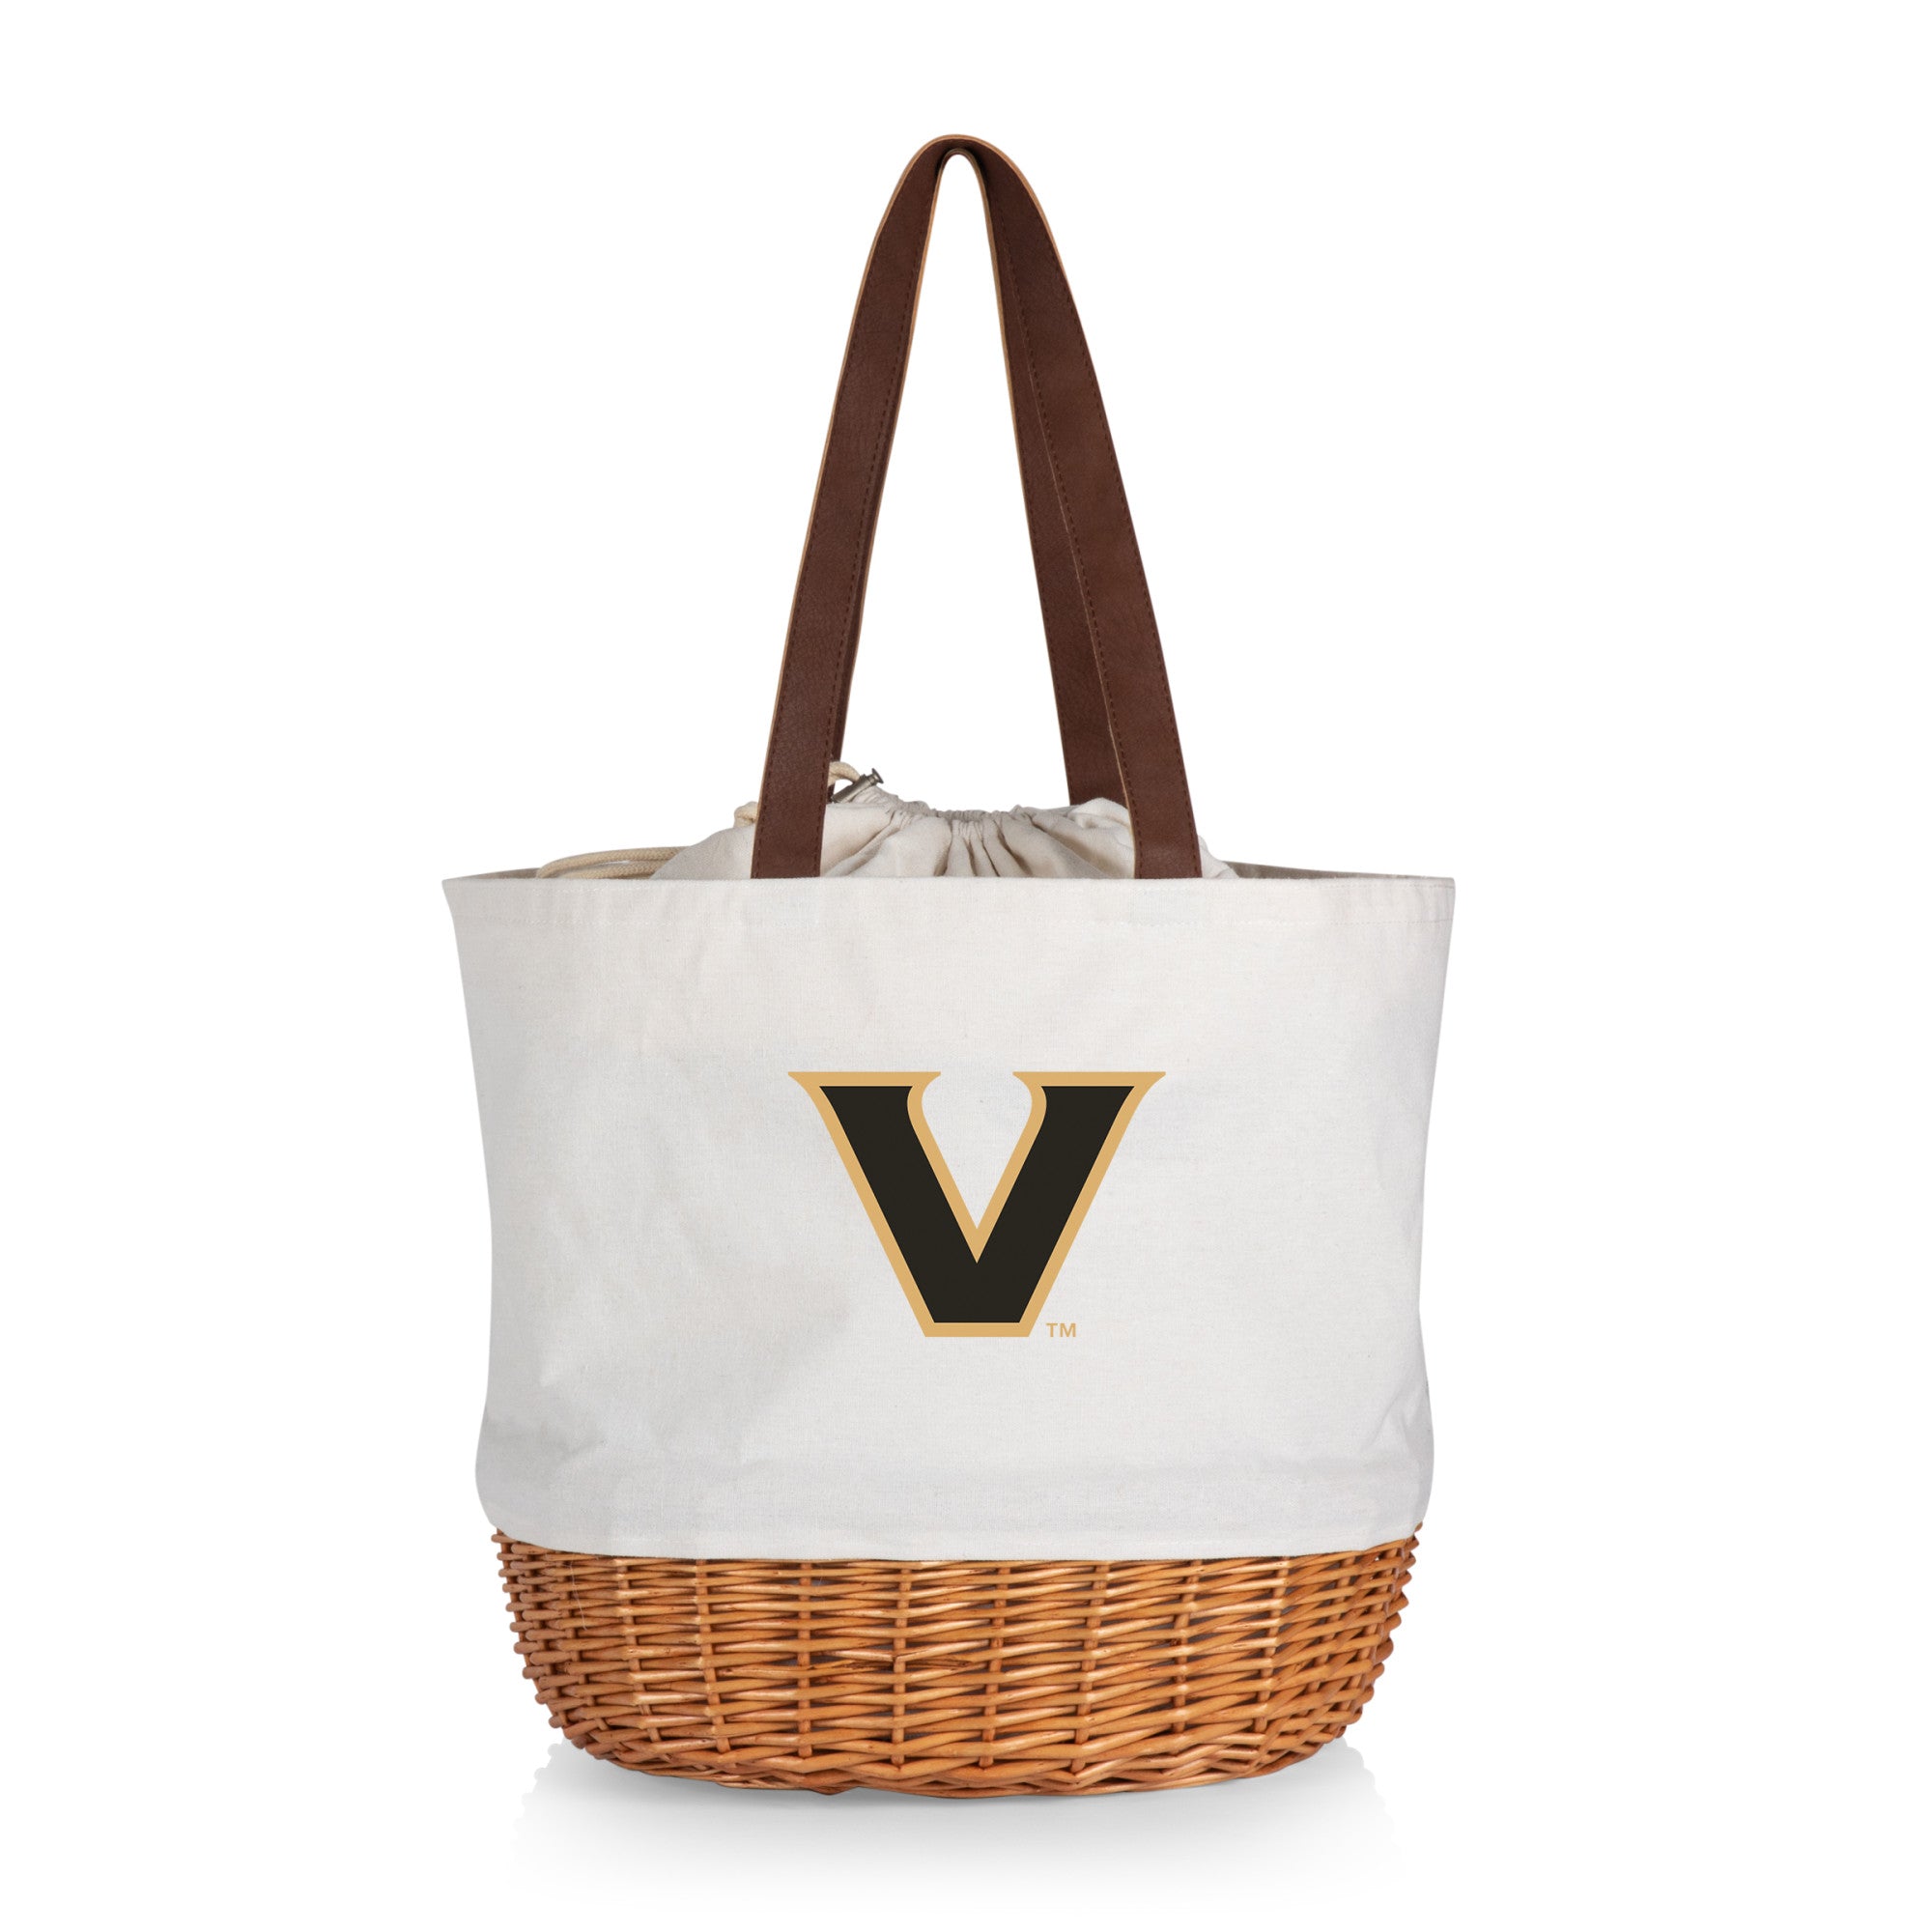 Vanderbilt Commodores - Coronado Canvas and Willow Basket Tote